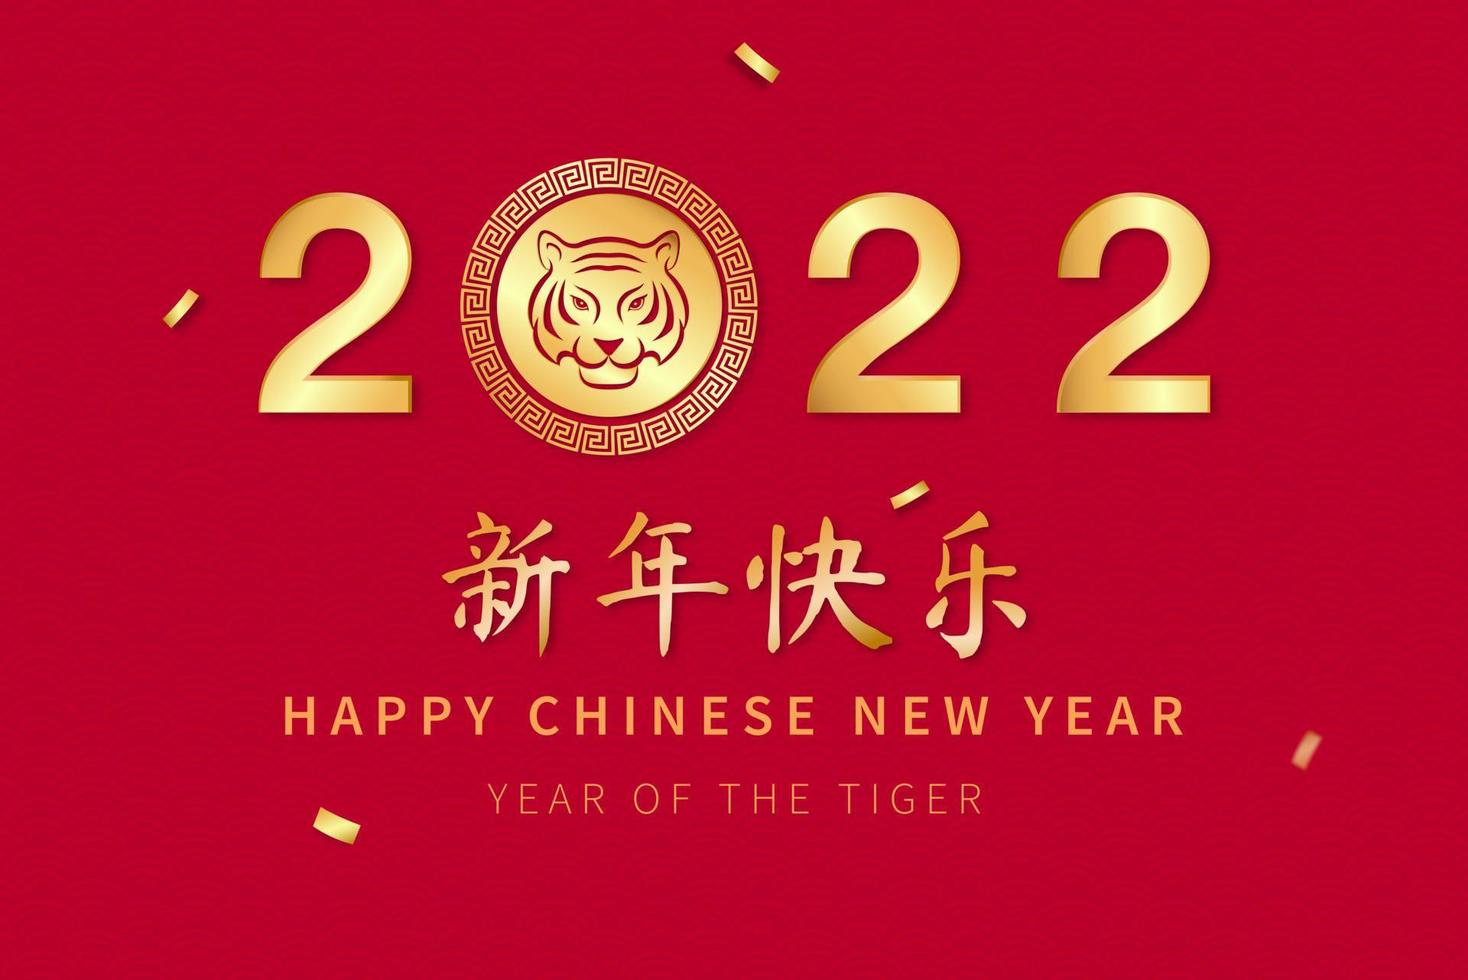 signe du zodiaque chinois tigre pour l'année 2022 avec des textes étrangers signifie bonne année sur fond rouge vecteur